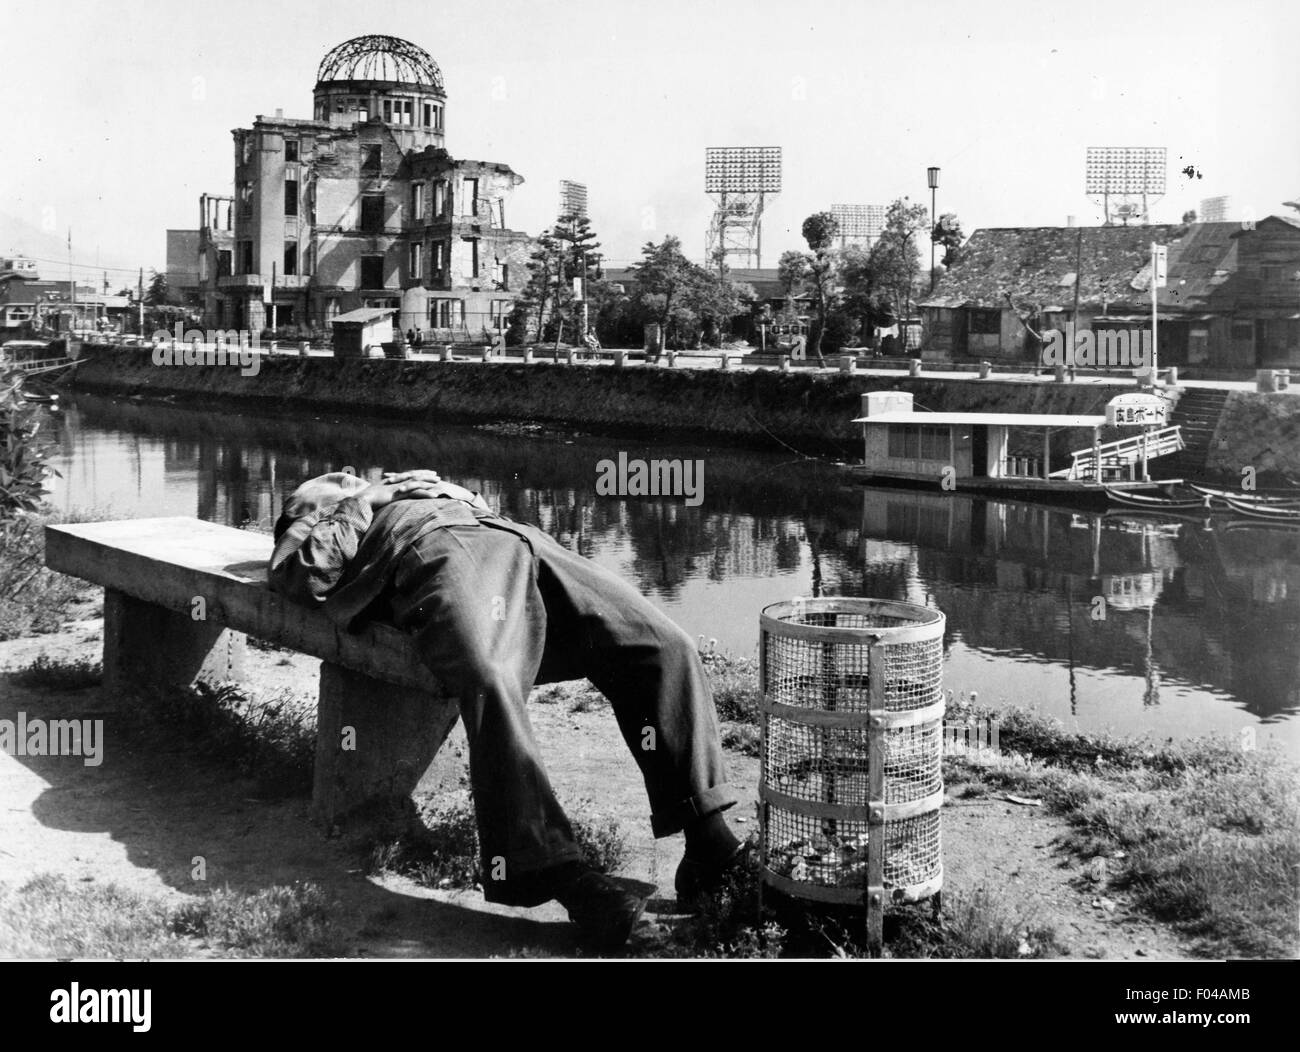 Japan. 6. August 2015. Datei - Hiroshima, die Stadt, die USA atomare Bombardierung im Jahr 1945 während des zweiten Weltkriegs gedacht zum 70. Jahrestag der Bombardierung im Friedenspark der Stadt. Im Bild: 29. März 2006; Hiroshima, JAPAN; (Foto-Datei: unbekanntes Datum) Ein japanischer Mann nimmt ein Nickerchen im Friedenspark, während über den Fluss auf einer Bank steht die Ruine der Industrie-Ausstellung Galerie, die sofort unter dem Punkt der Explosion der Bombe stand. Während der Rest von Hiroshima wieder aufgebaut wurde, wird dieses Gebäude als eine düstere Erinnerung an die Katastrophe erhalten. (Kredit-Bild: © ein Stockfoto